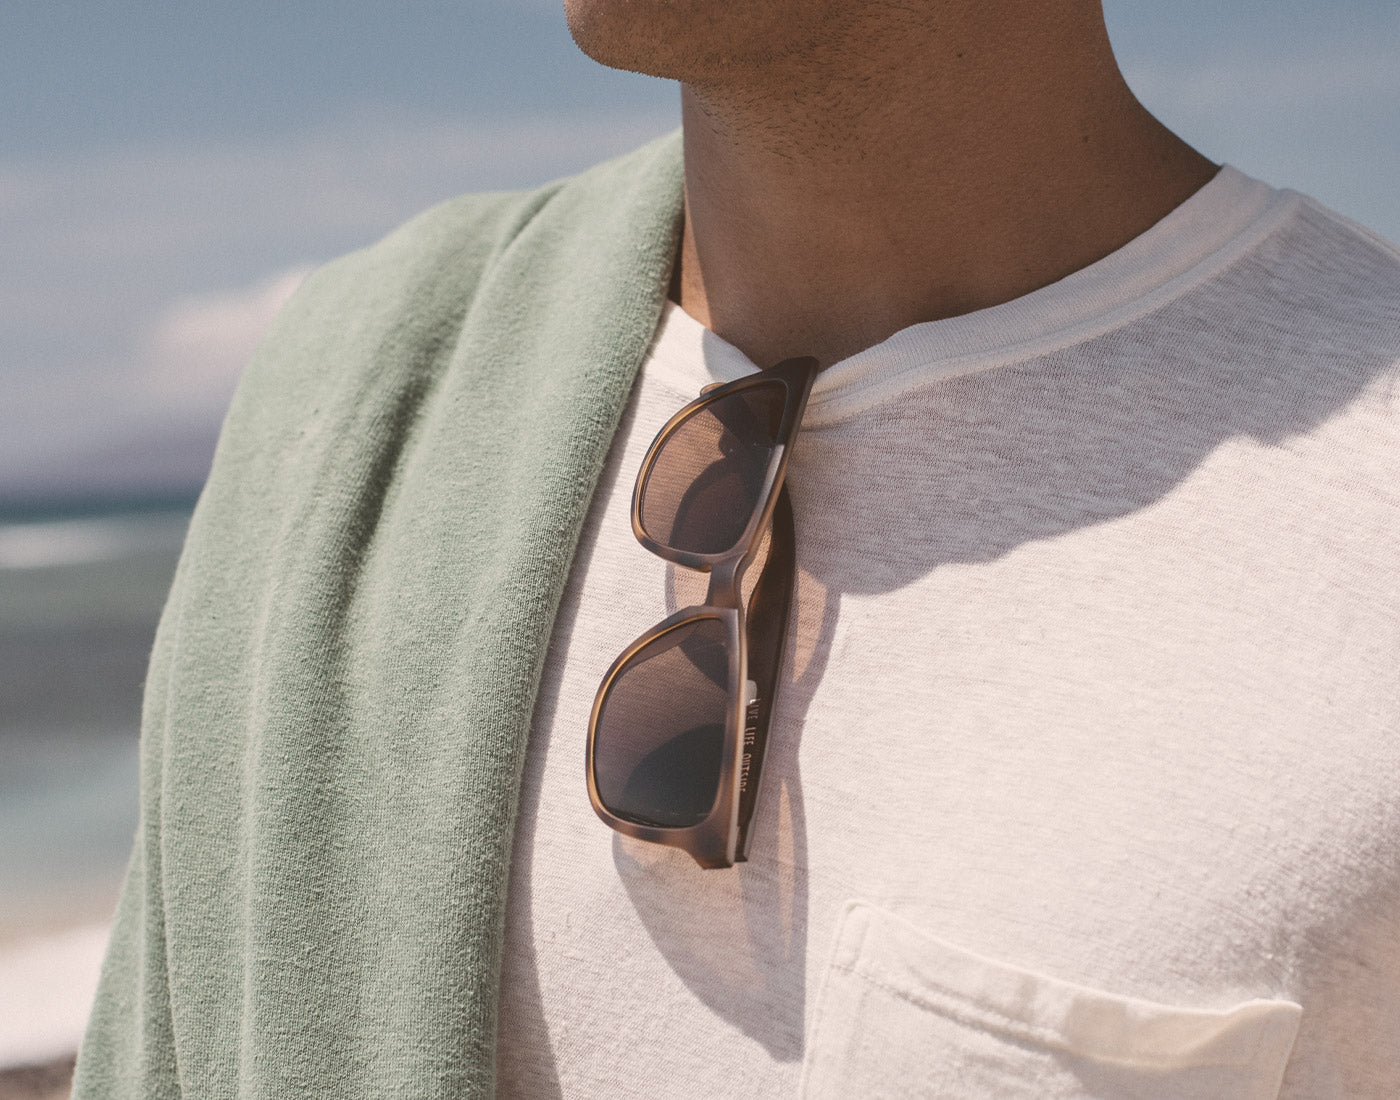 sunski madrona sunglasses hanging on shirt collar